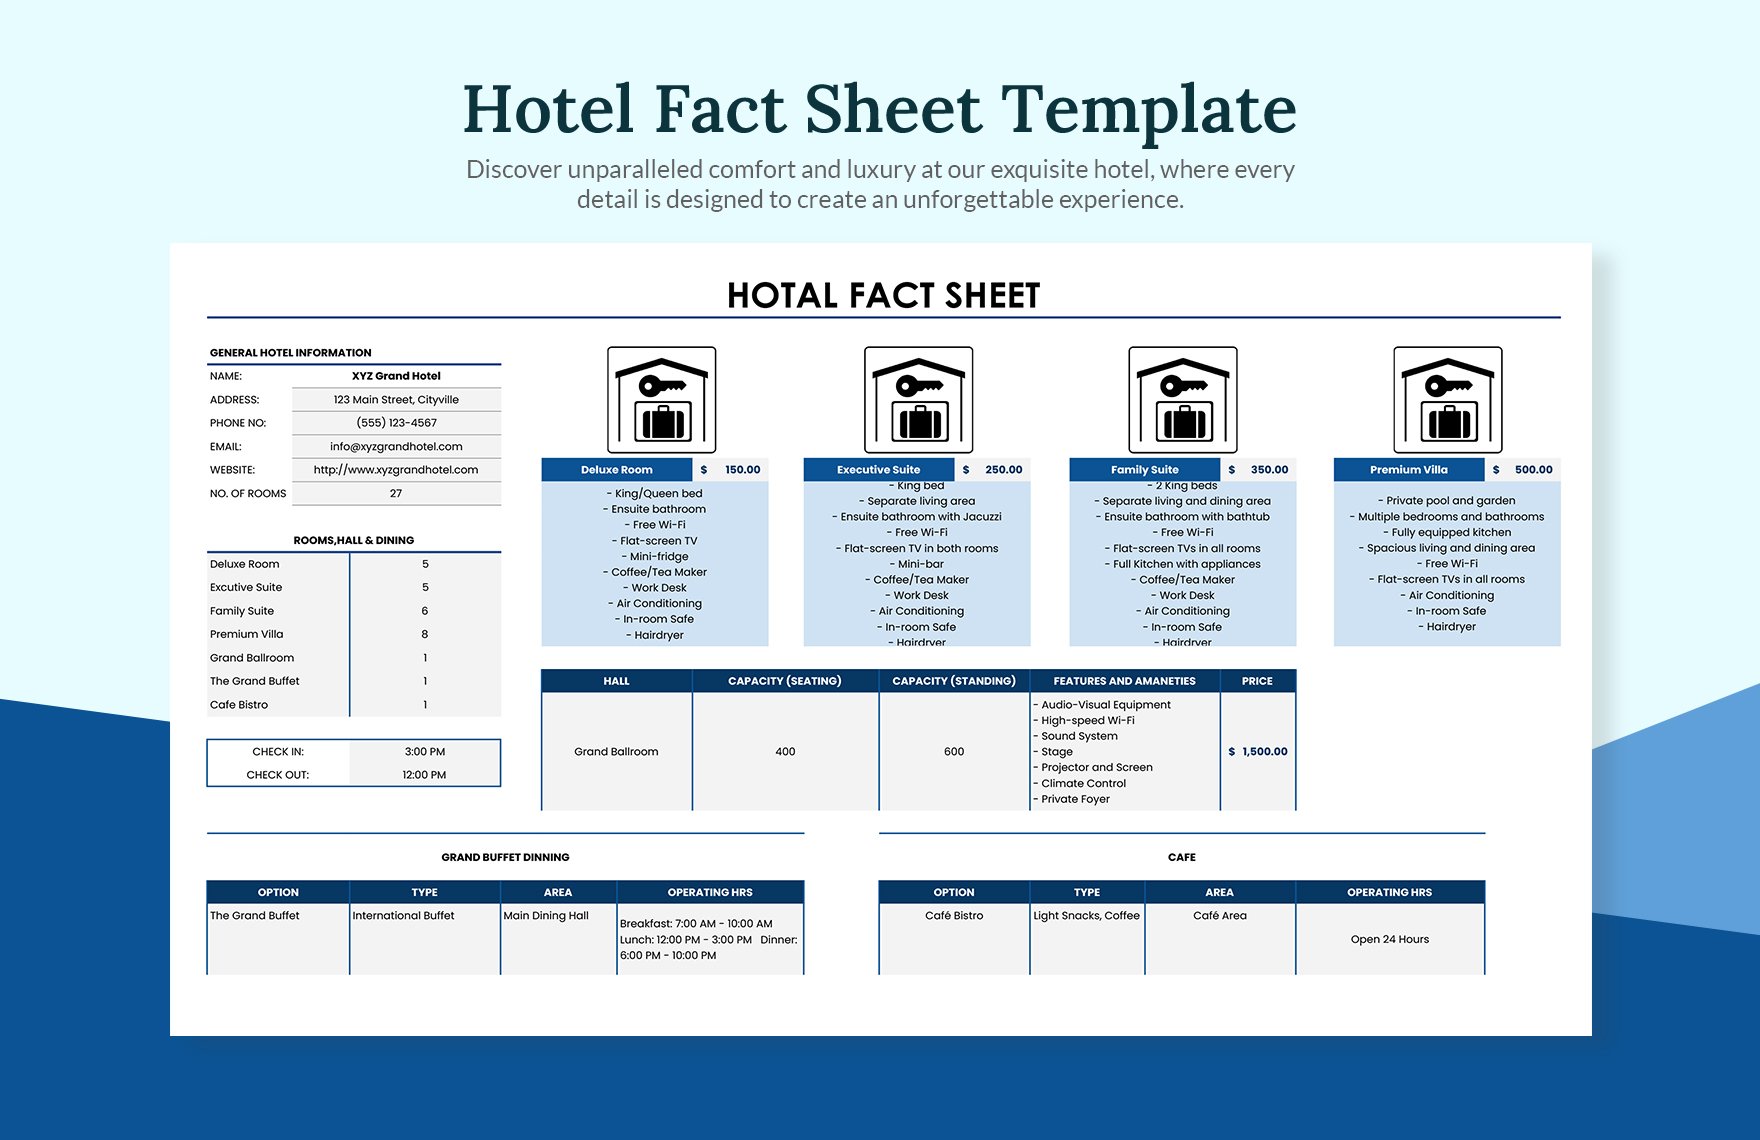 Hotel Fact Sheet Template